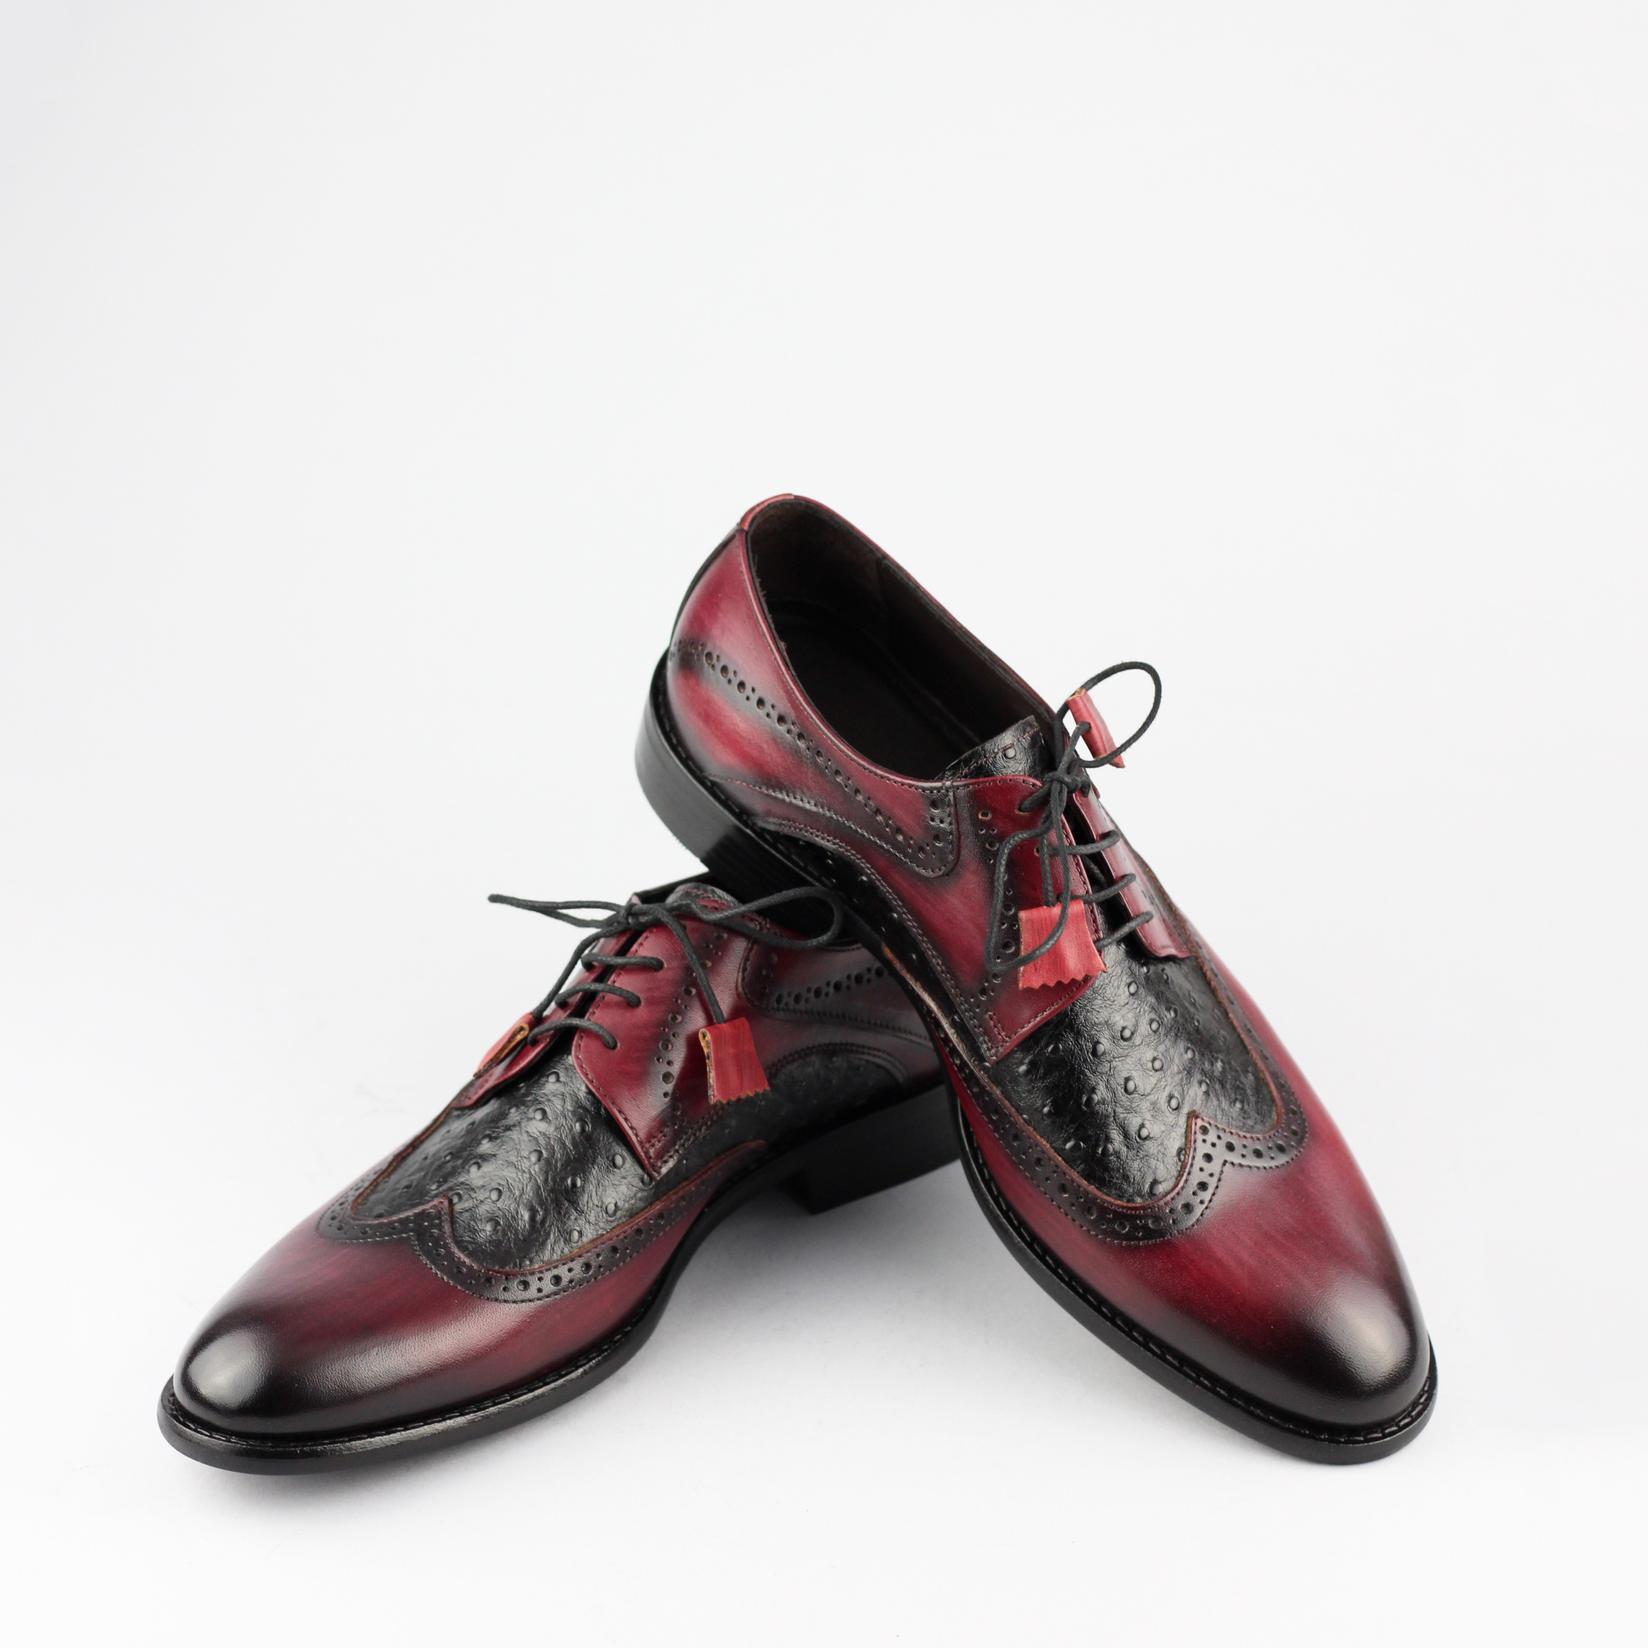 SANTOS & SANTORINI Muške cipele Burgandy crvene